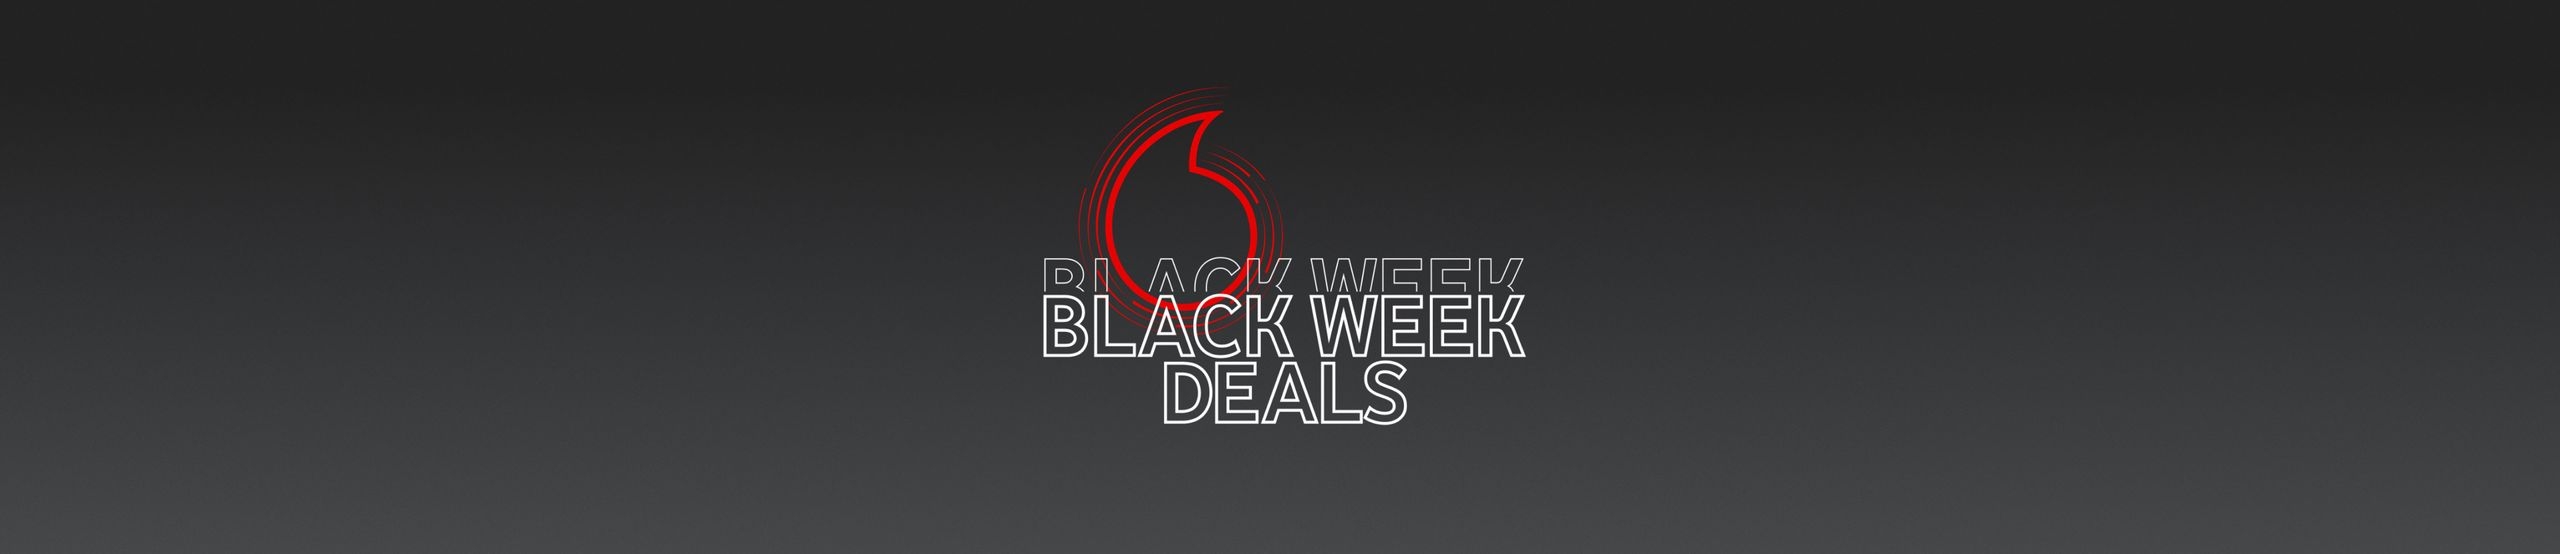 Die Vodafone Speechmark mit dem Schriftzug Black Week Deals